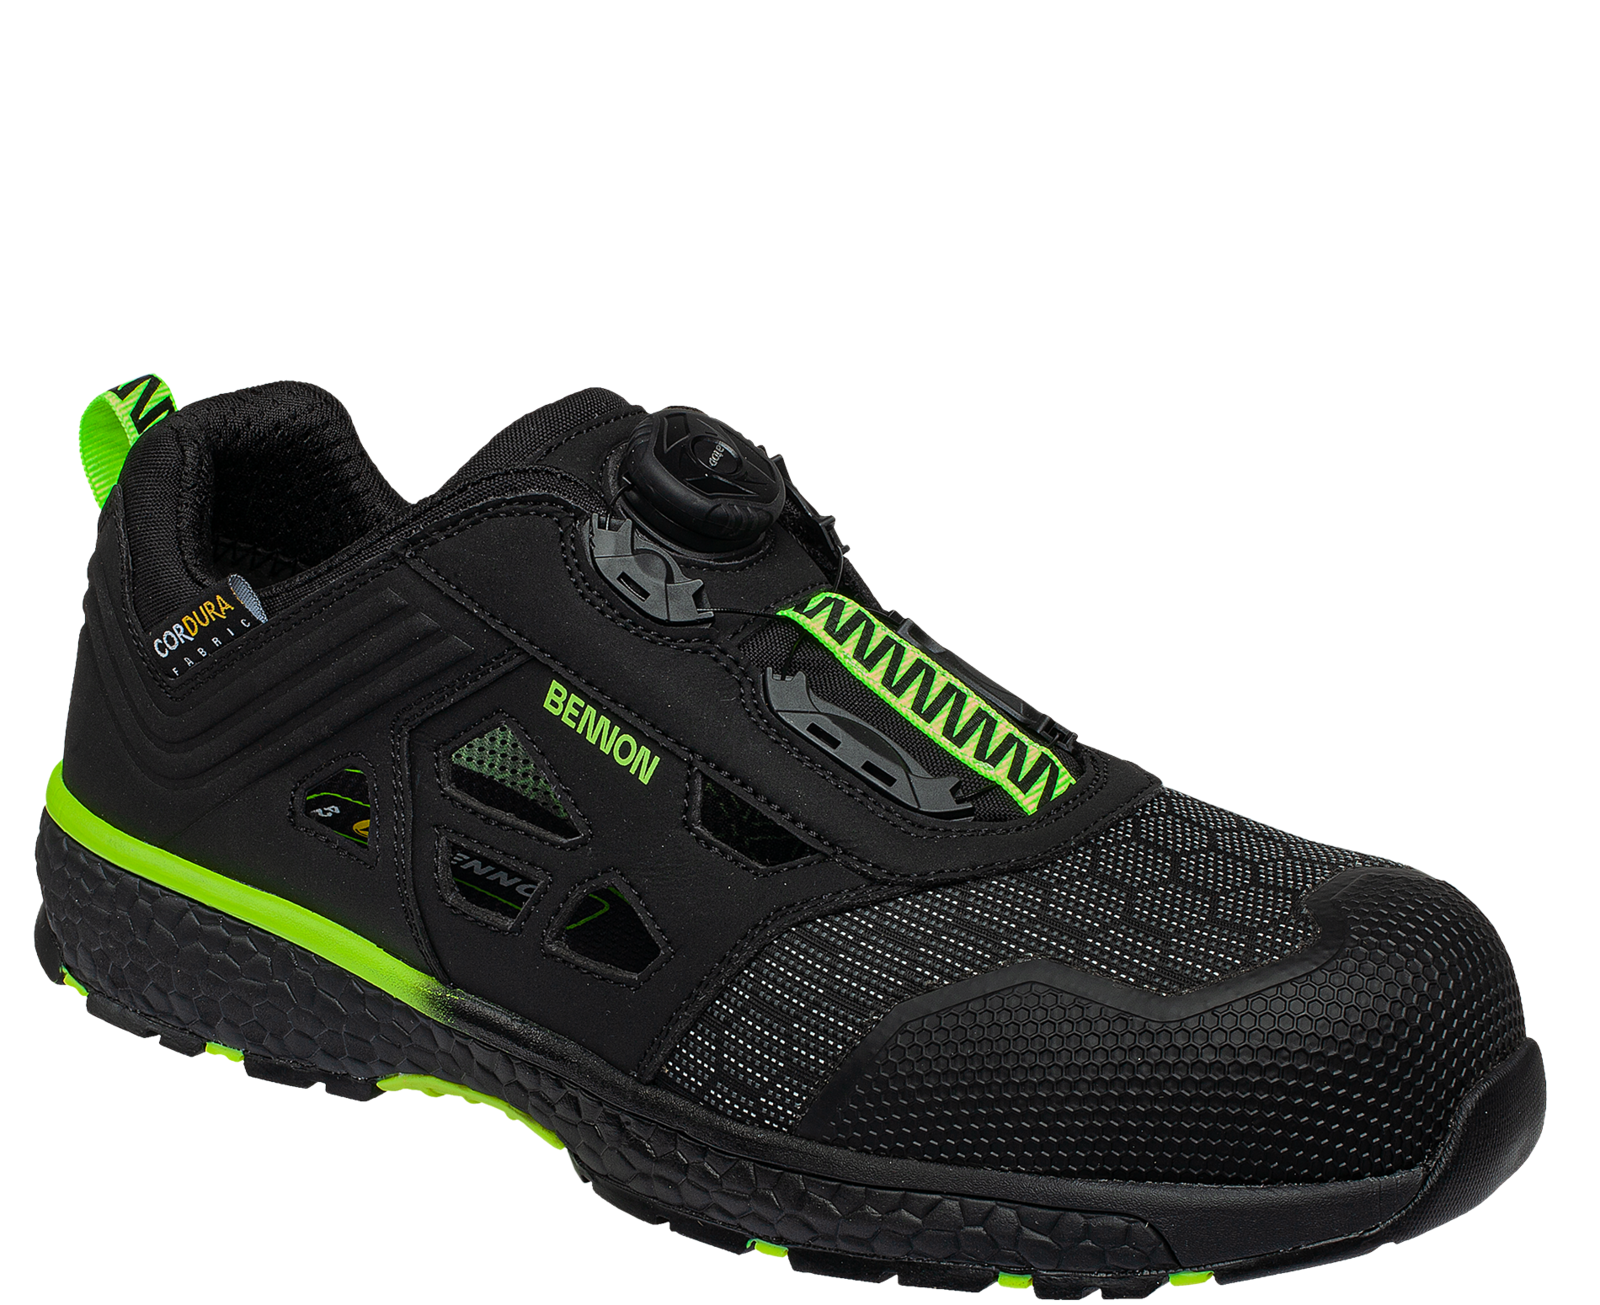 Bezpečnostné sandále Bennon Predator S1P ESD - veľkosť: 48, farba: čierna/zelená